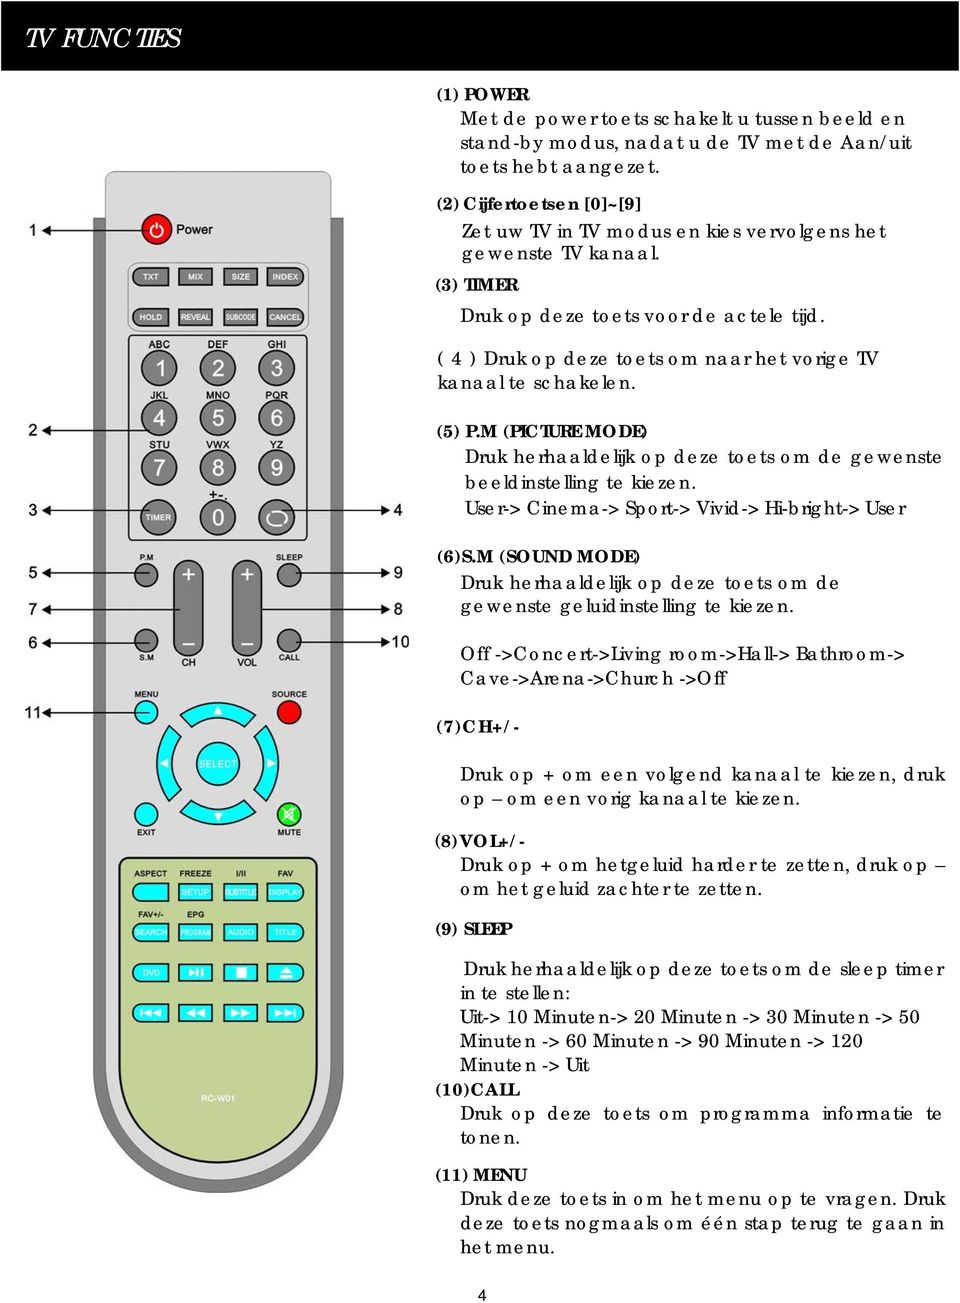 (2) Cijfertoetsen [0]~[9] (2) DIGITAL KEY [0]~[9] Zet uw TV in TV modus en kies vervolgens het When in TV mode, press the digital key to select gewenste TV kanaal.